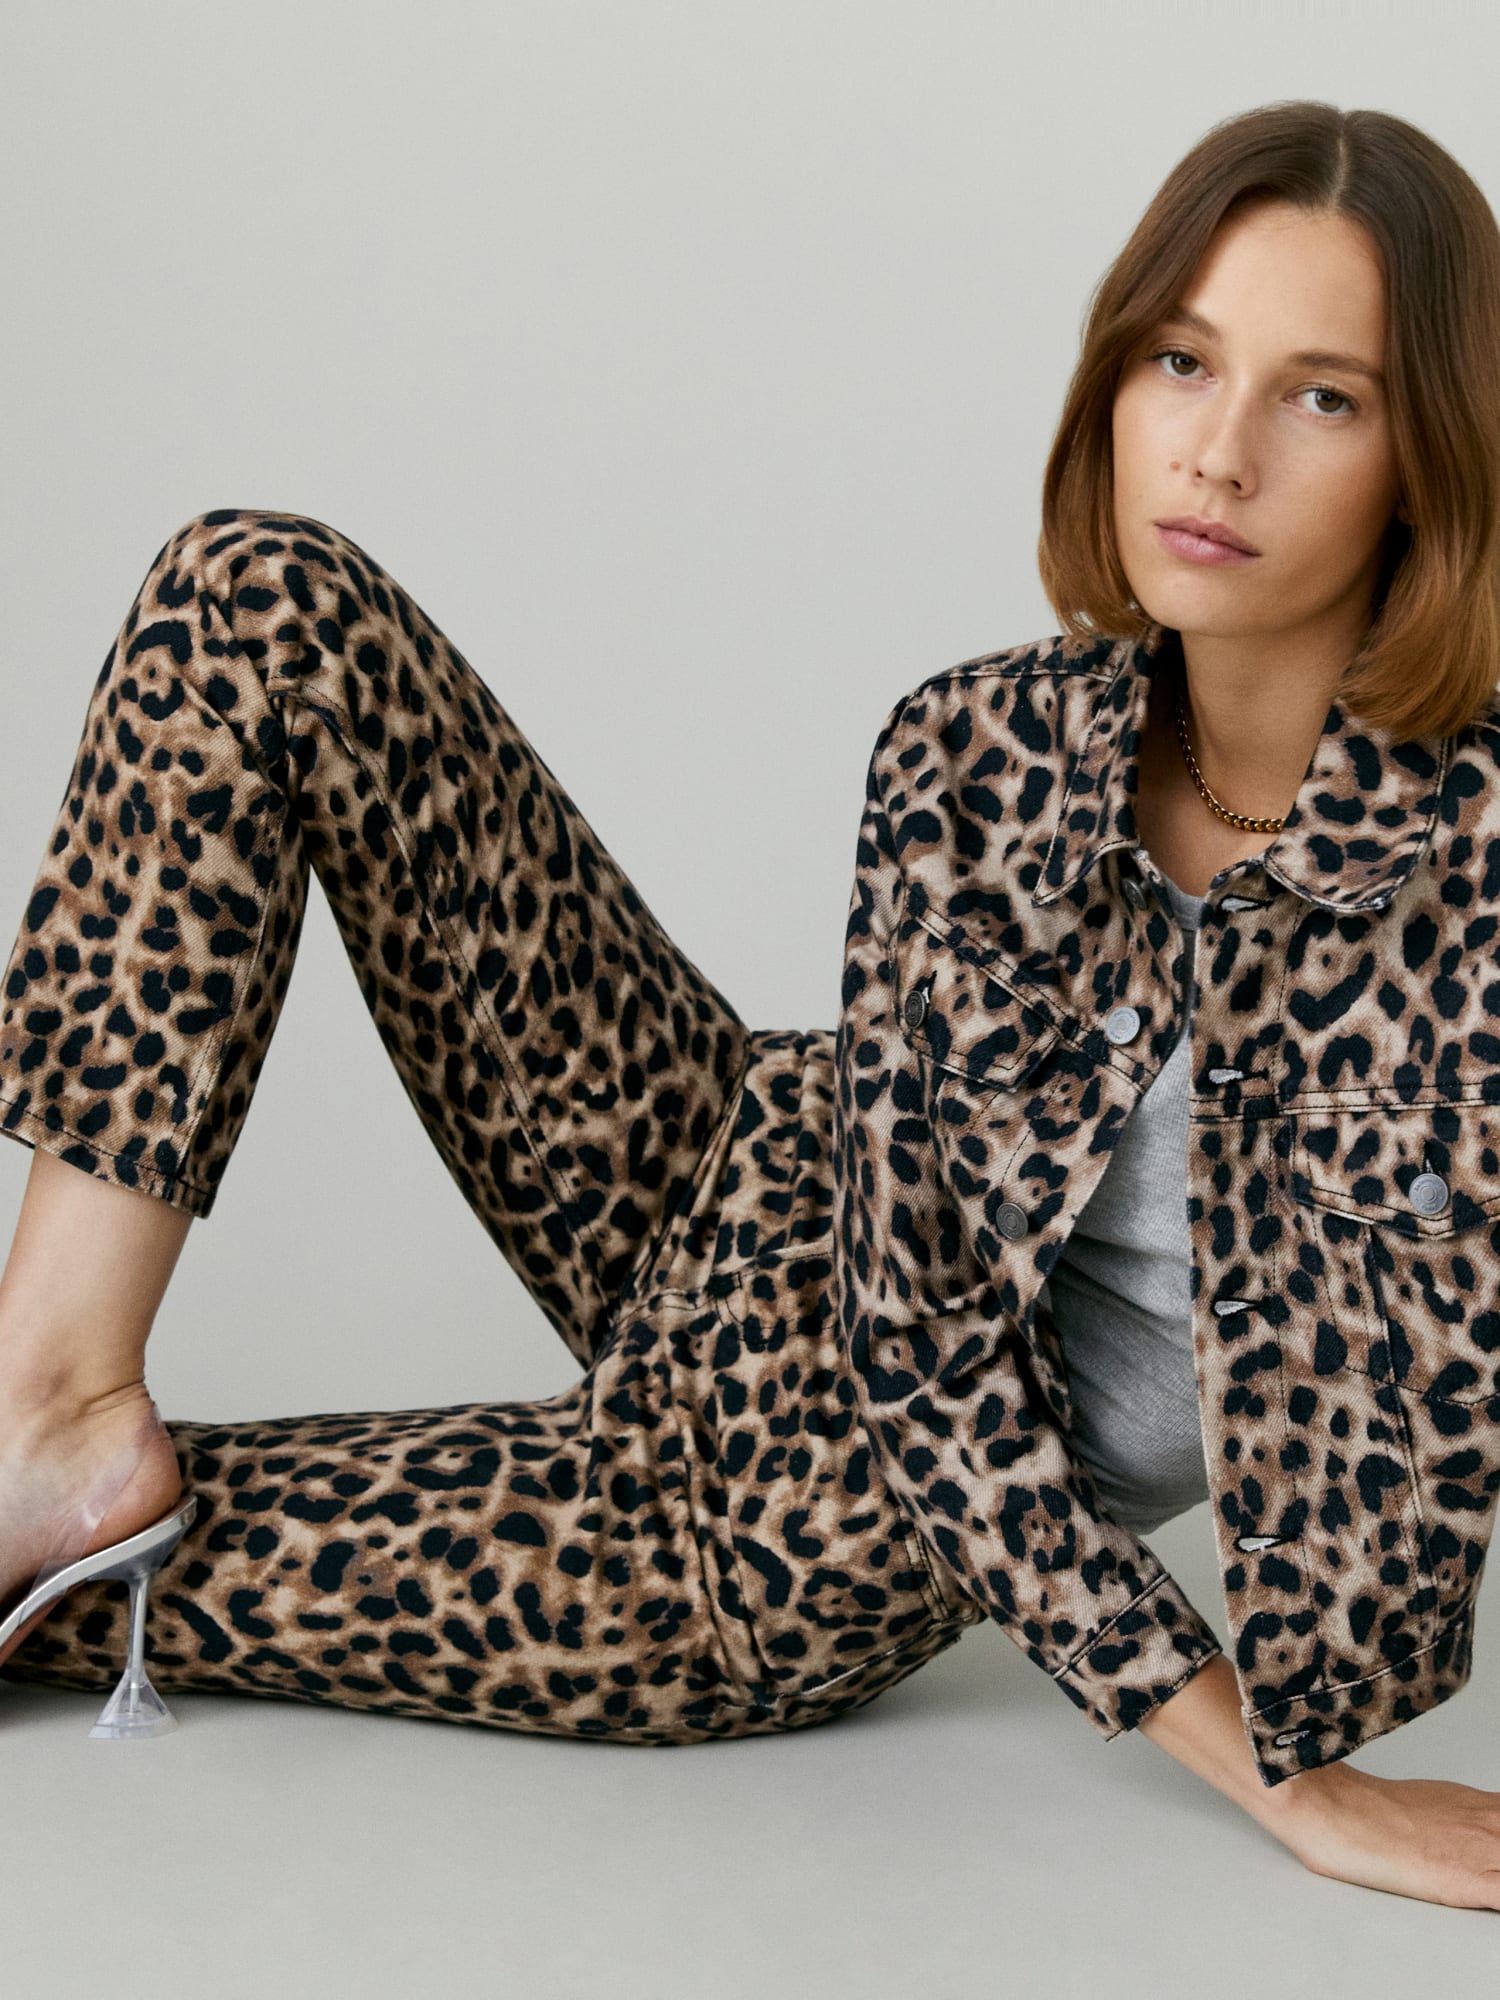 Reformation Leopard Pants | vlr.eng.br